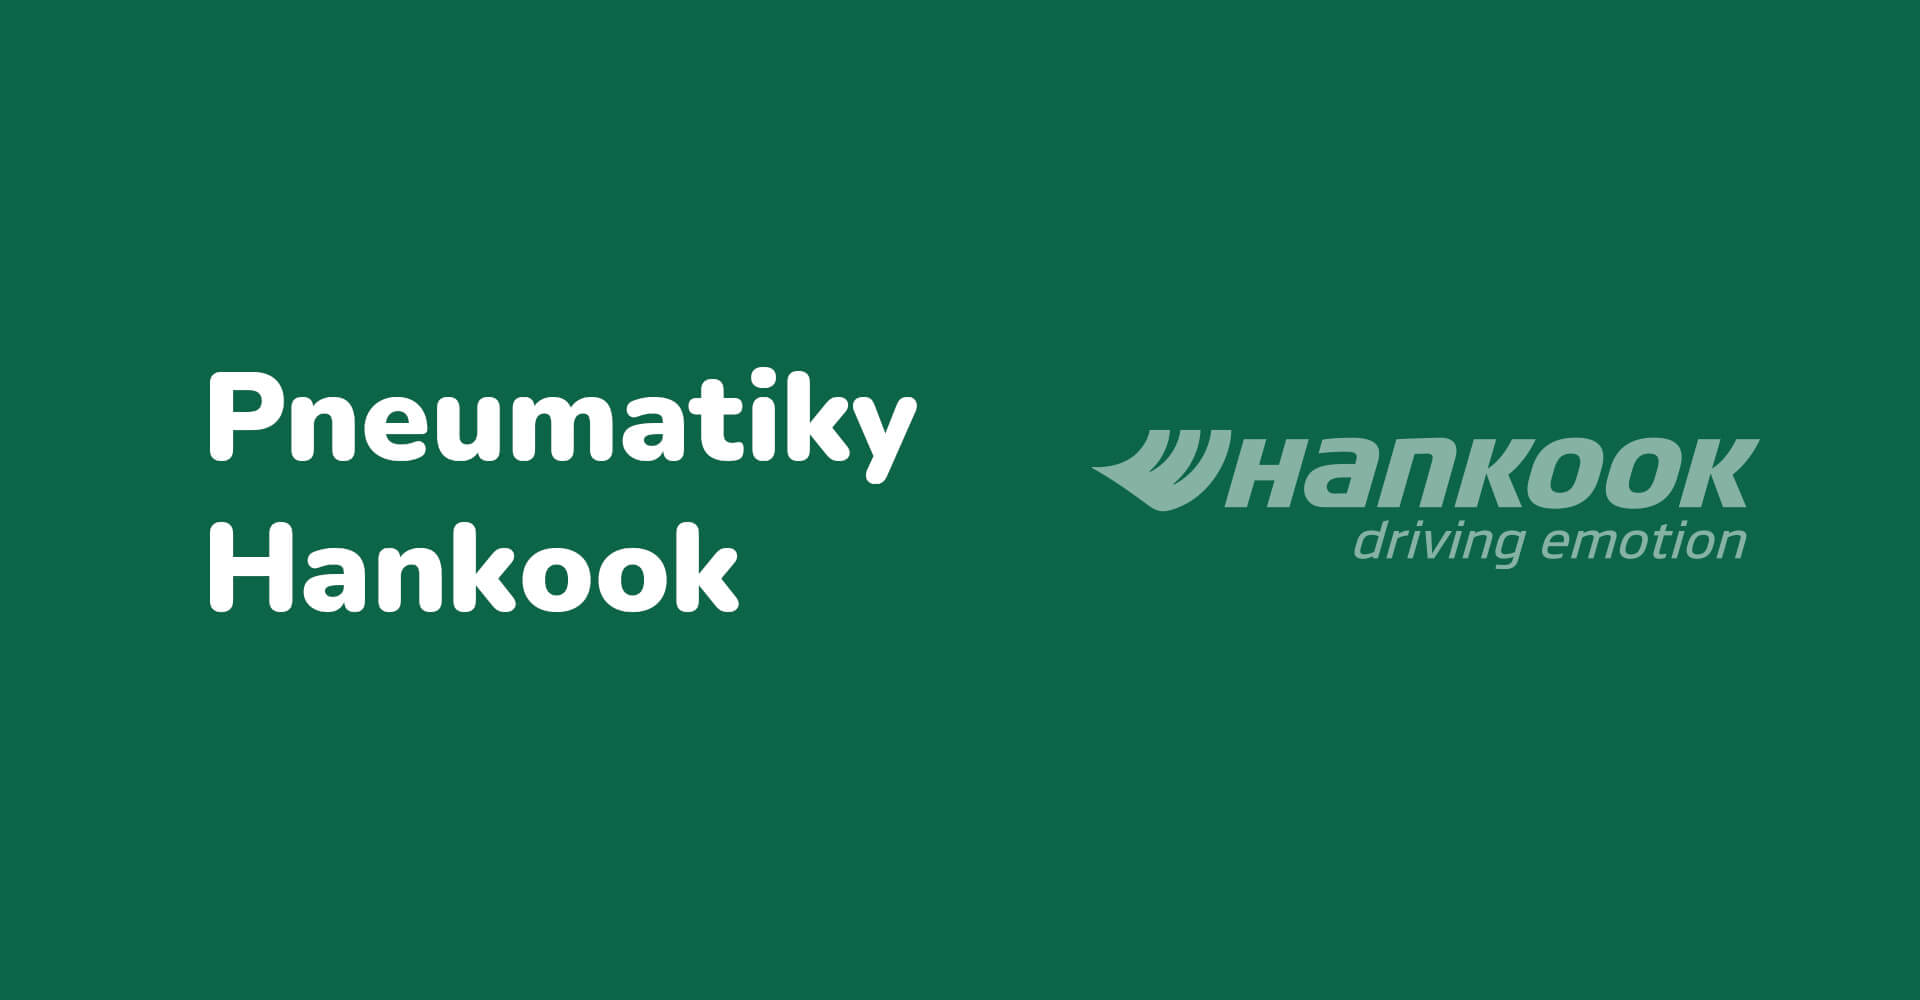 Podrobné informace o pneumatikách Hankook